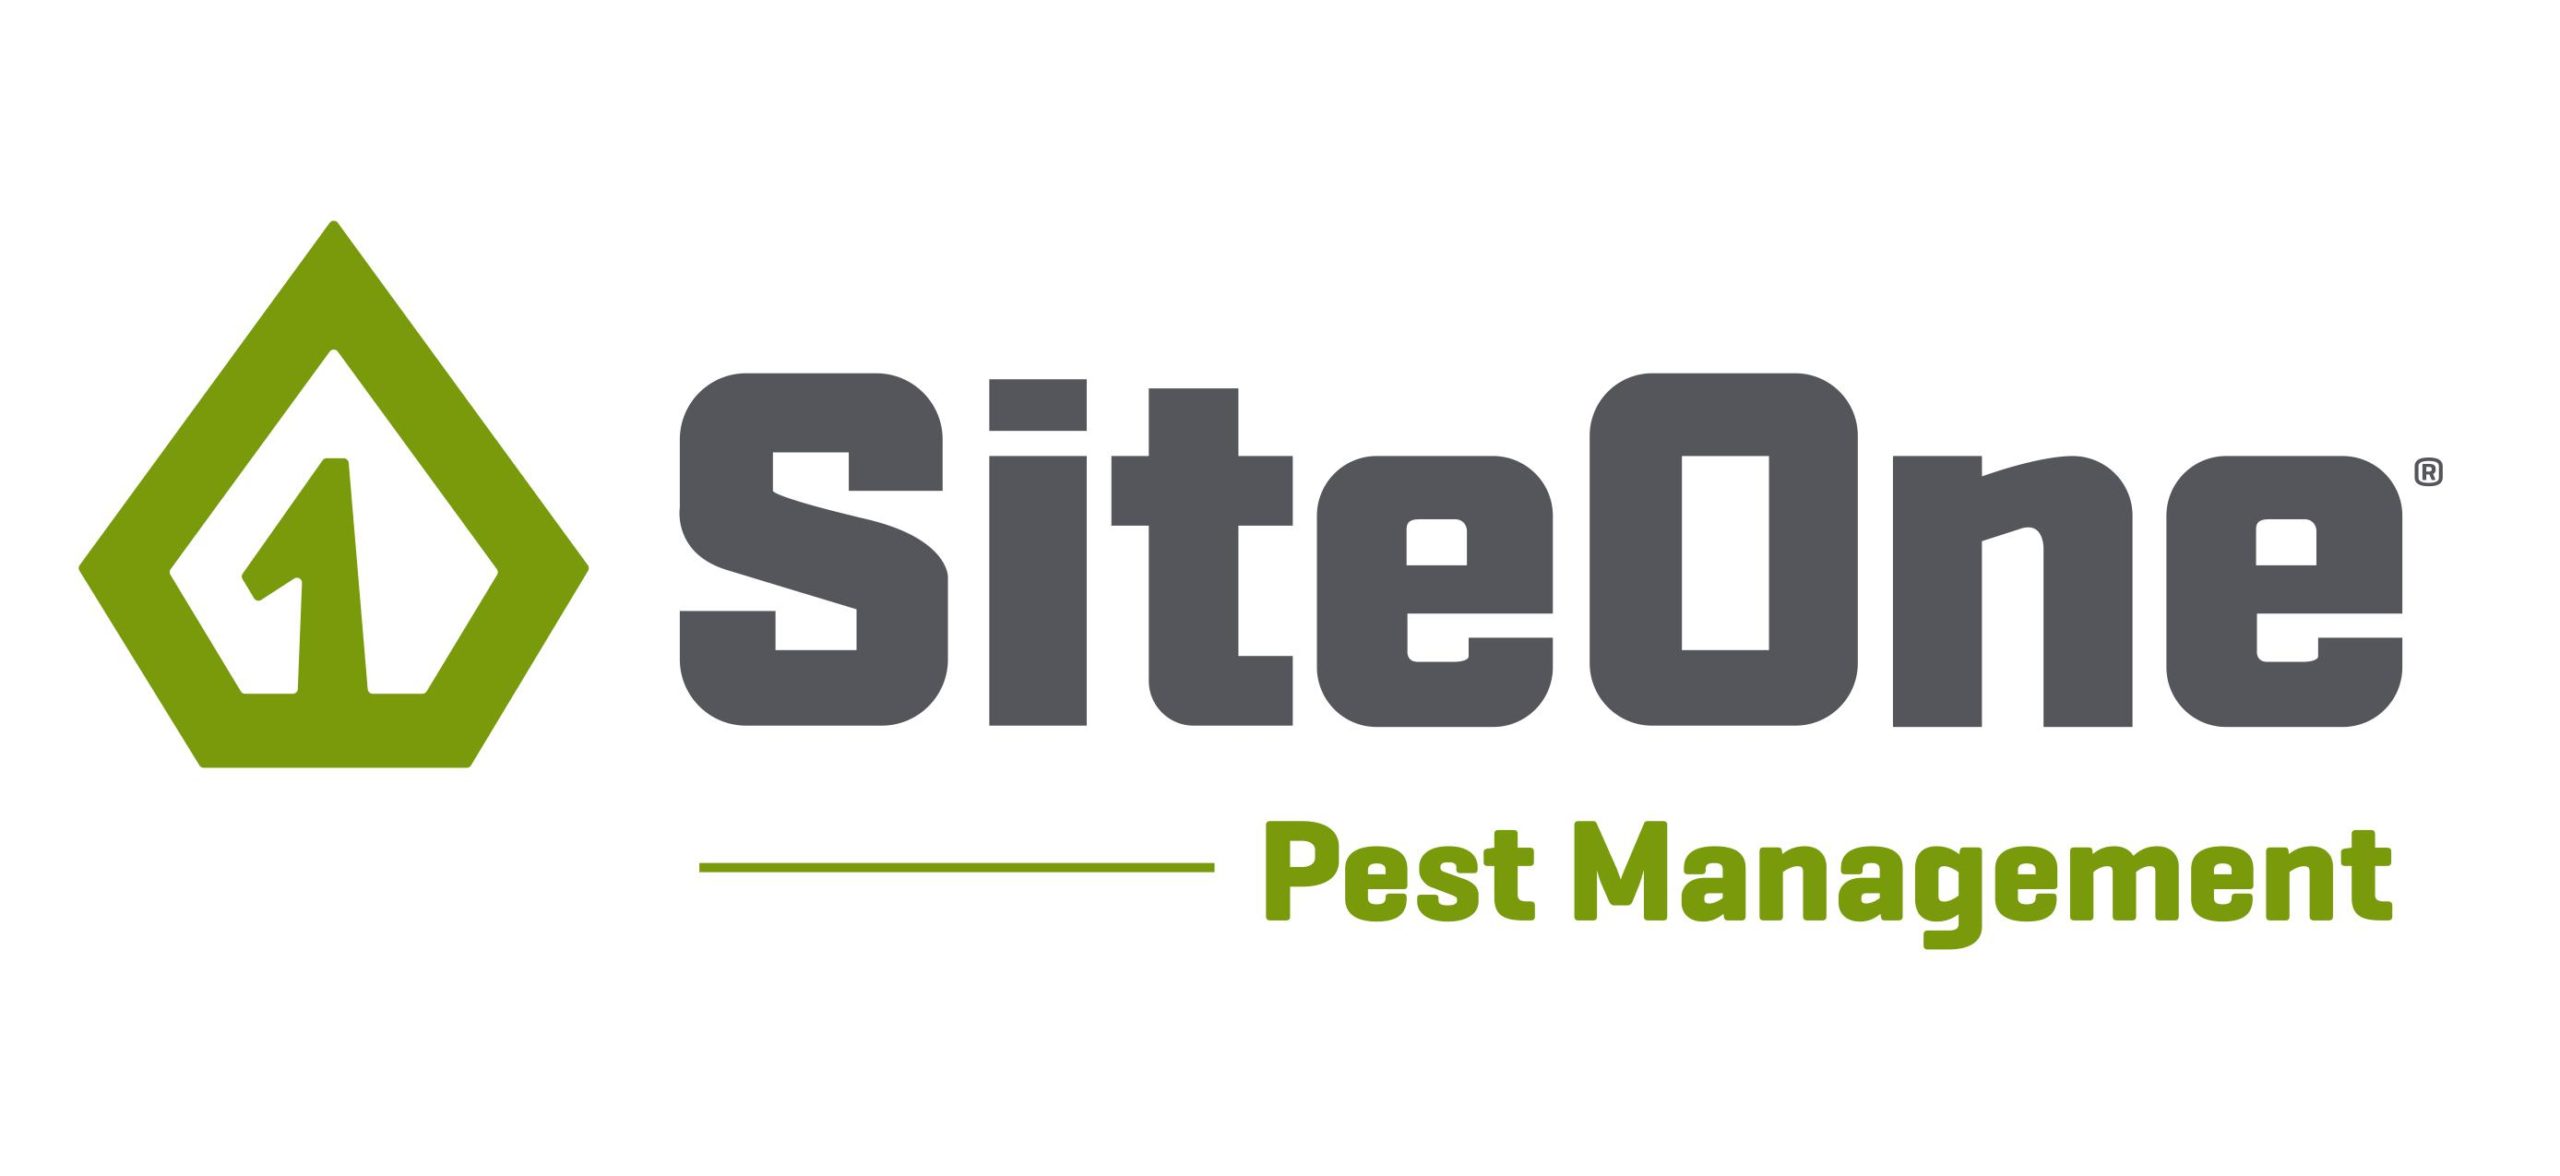 SiteOne_Pest_Management_Logo_2C (1)